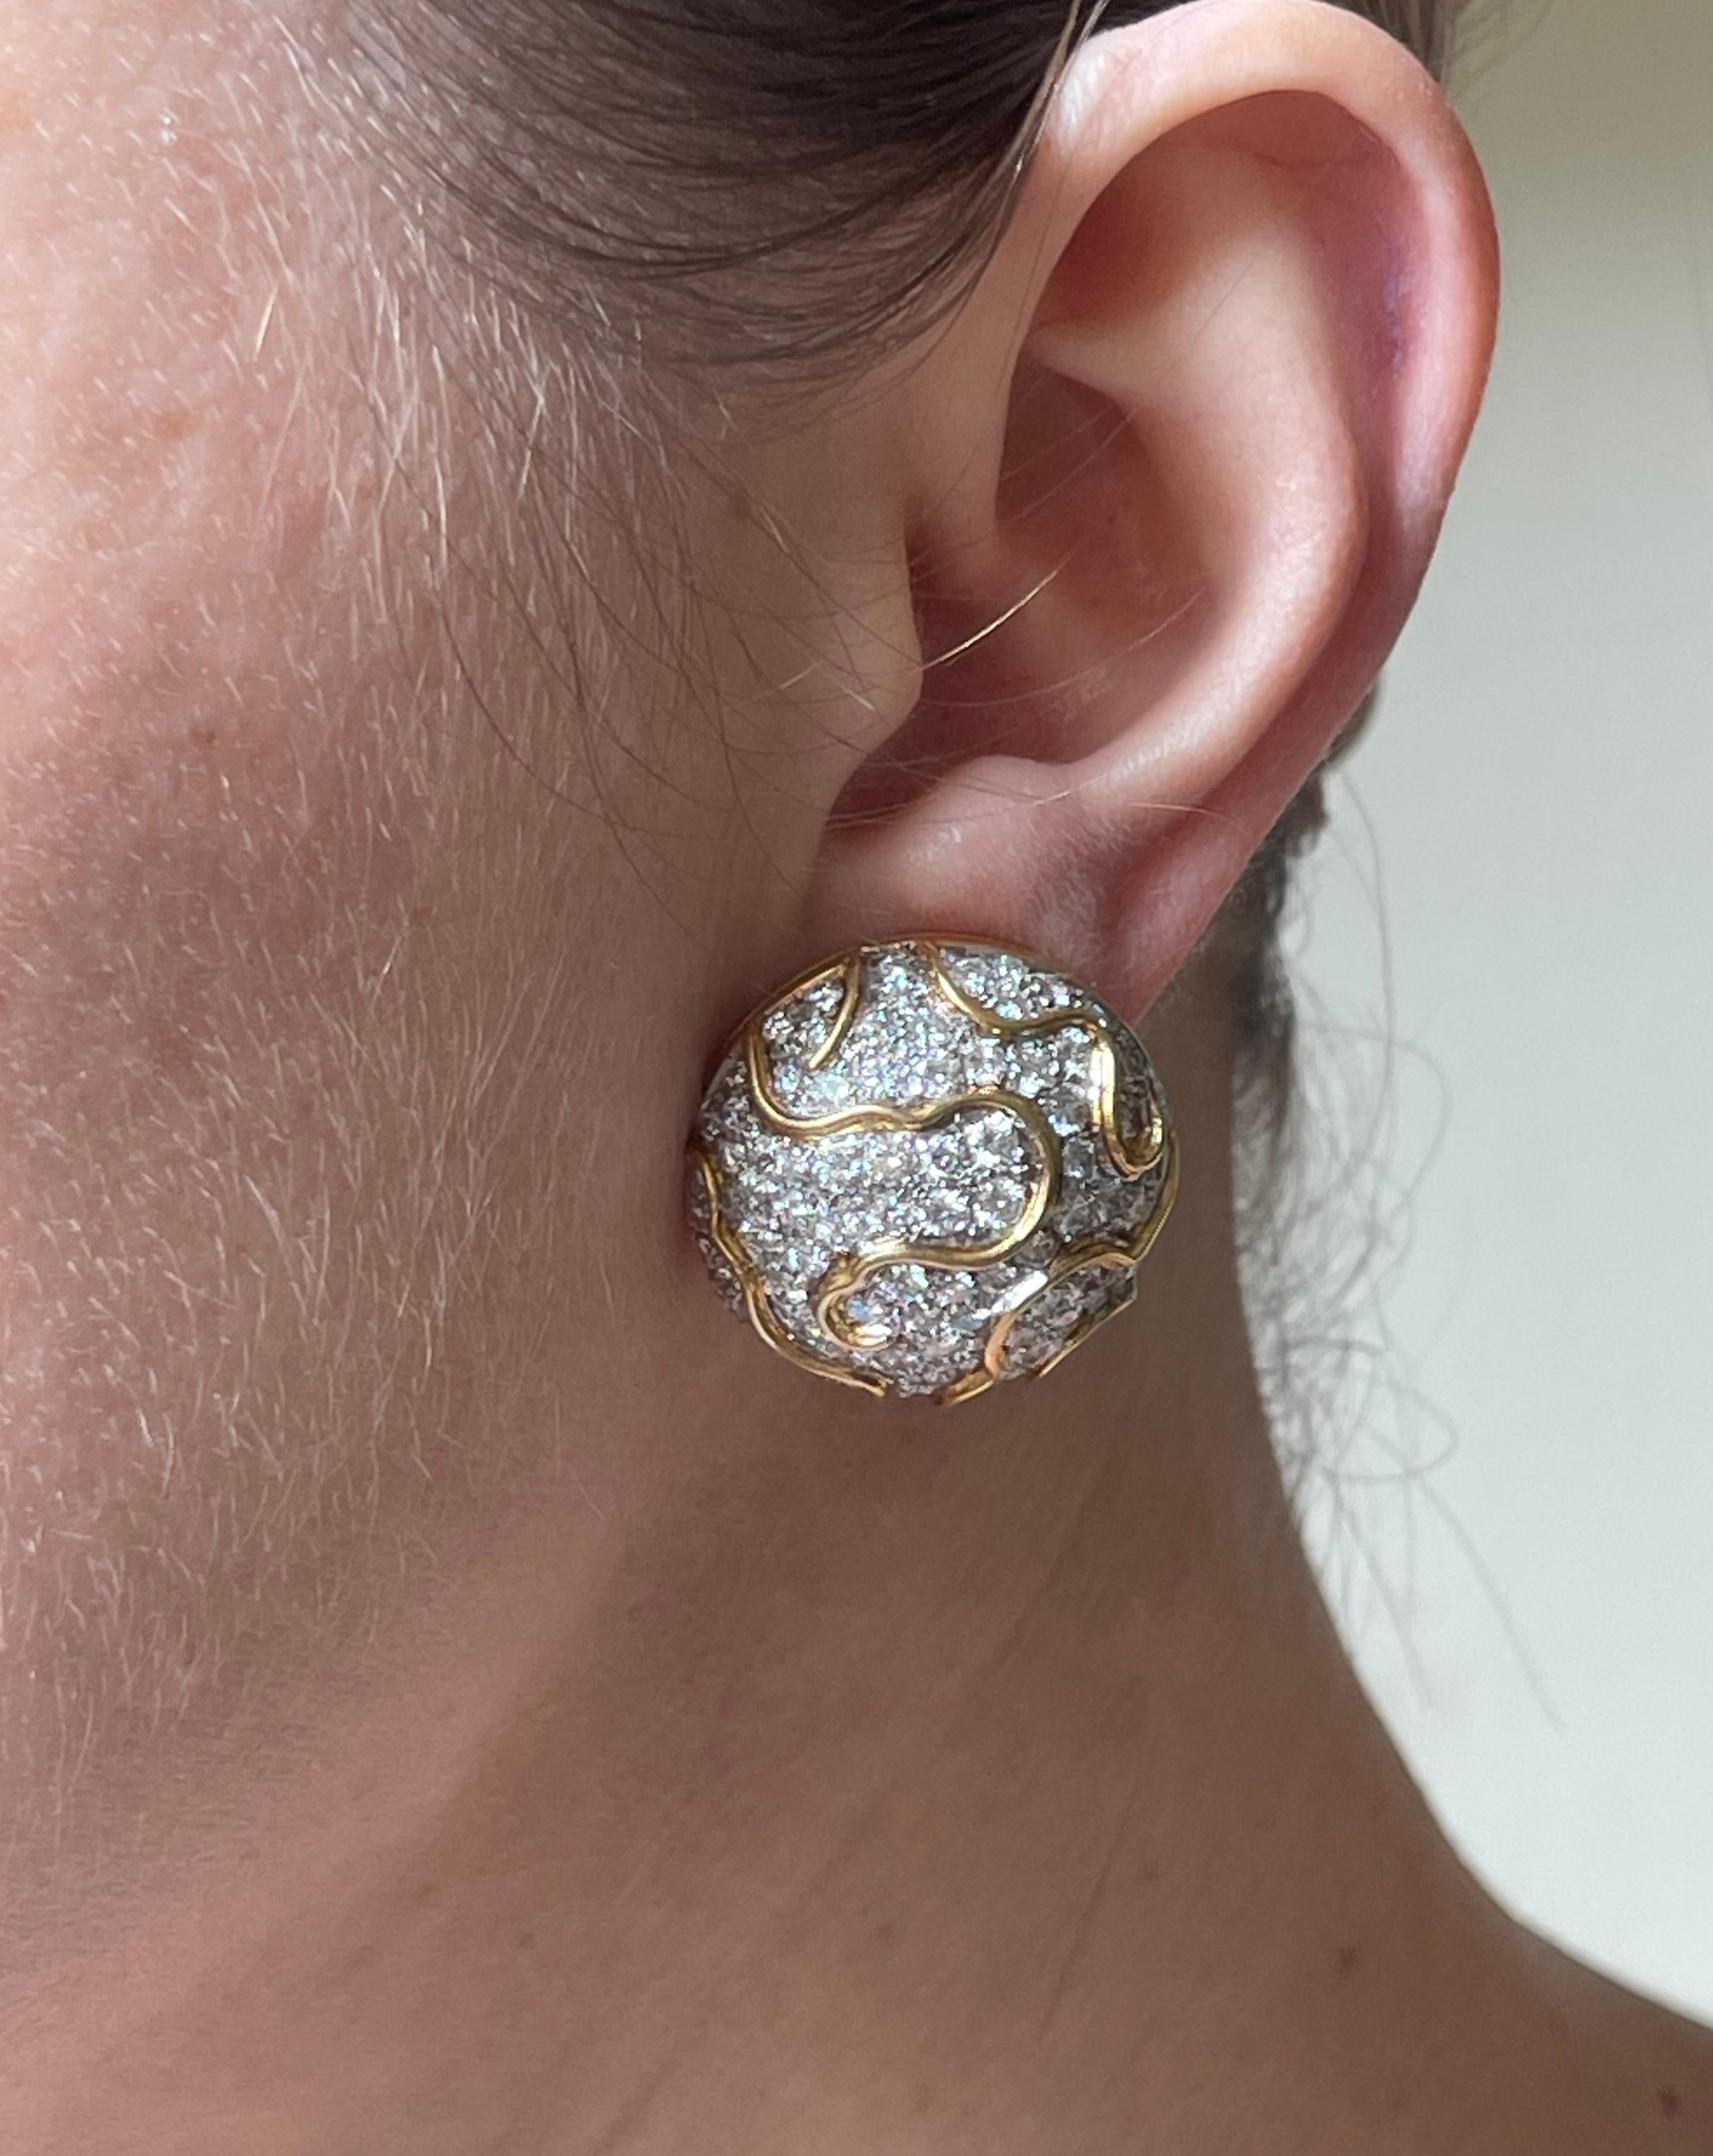 Paire de boucles d'oreilles en or 18k avec environ 8ctw en diamants GH/VS. Les boucles d'oreilles mesurent 1